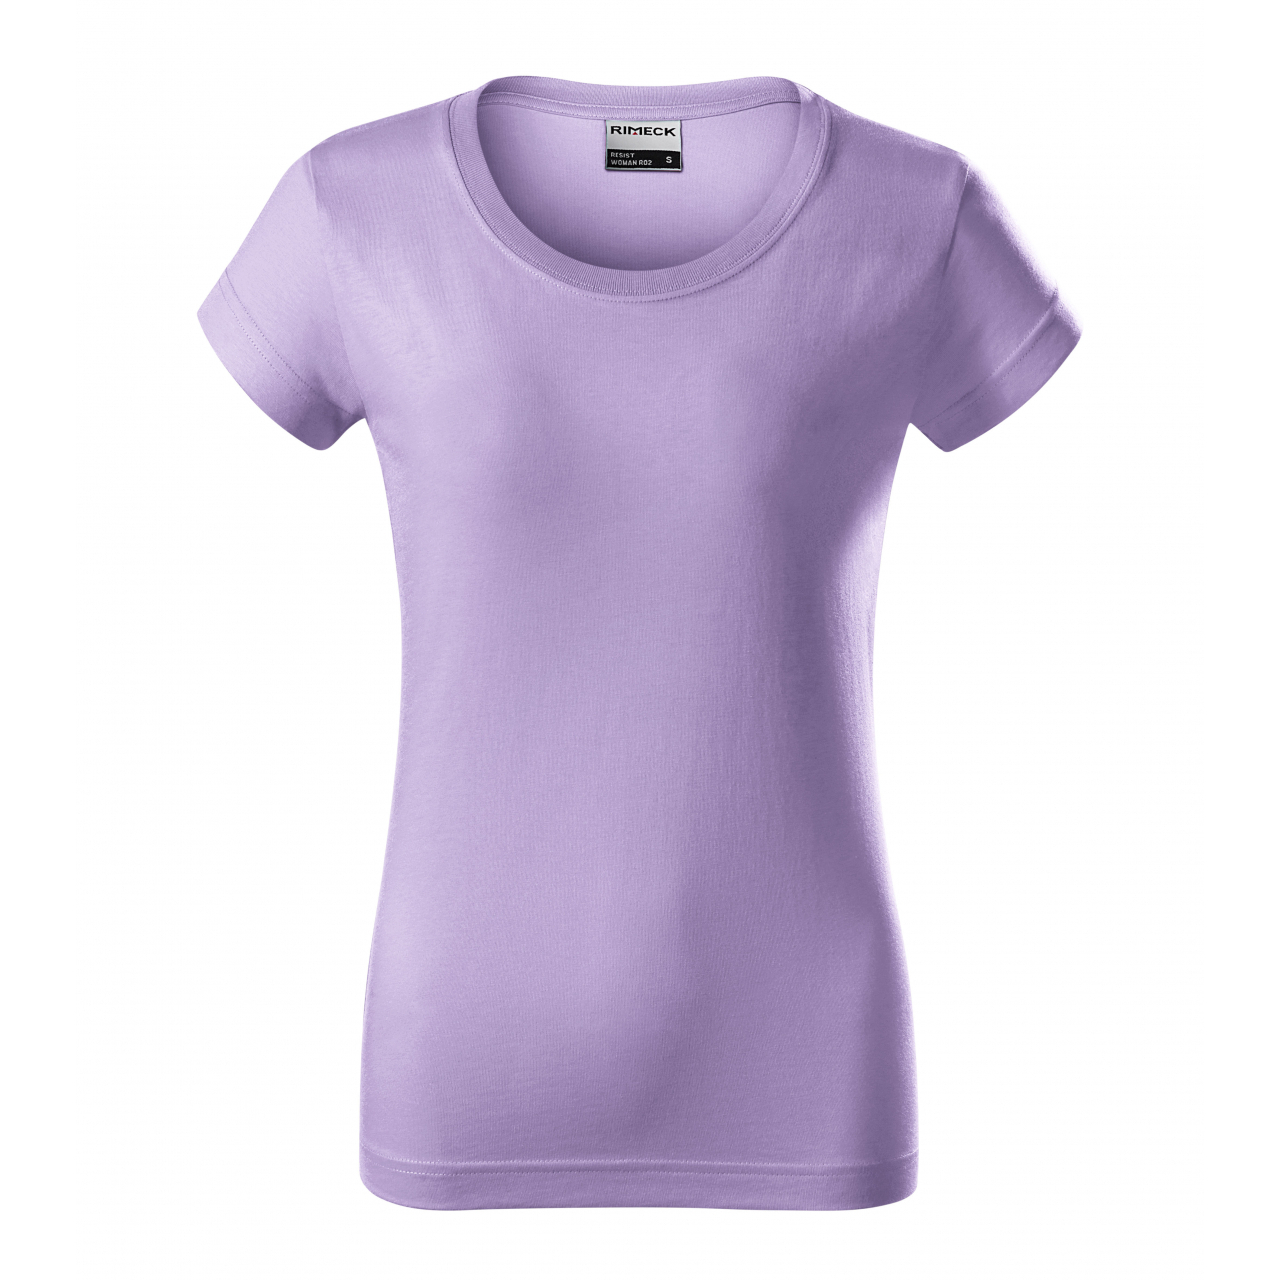 Tričko dámské Rimeck Resist - světle fialové, XL